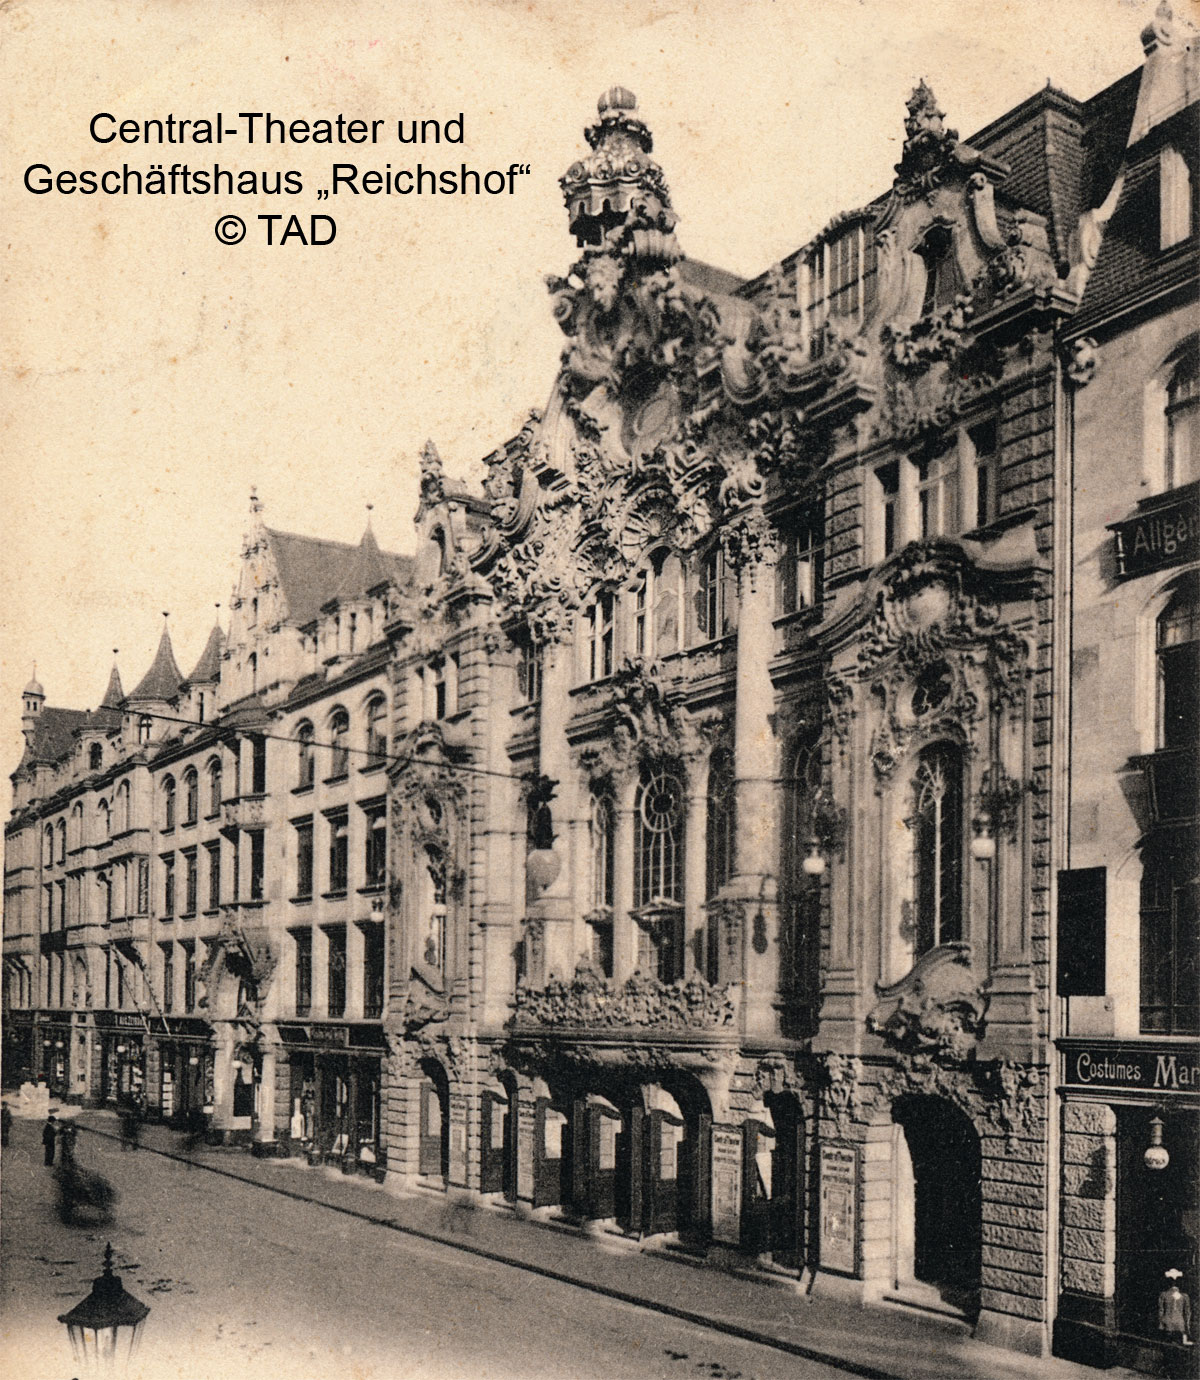 Central-Theater und Reichshof 1900